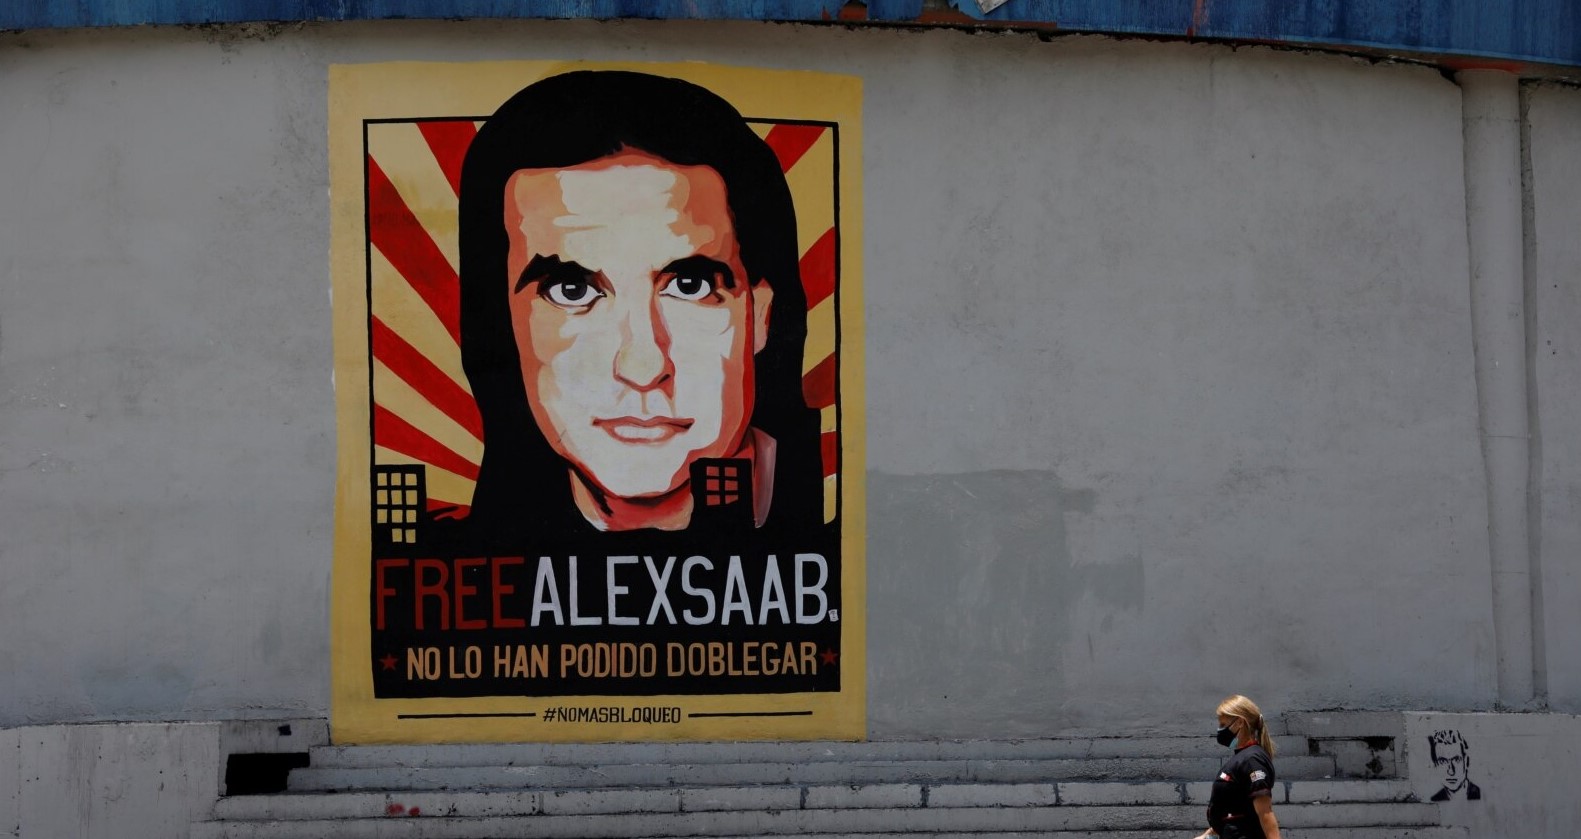 Semana: Sus cuentas pendientes en Colombia, juicio a Alex Saab empezará el #25Oct